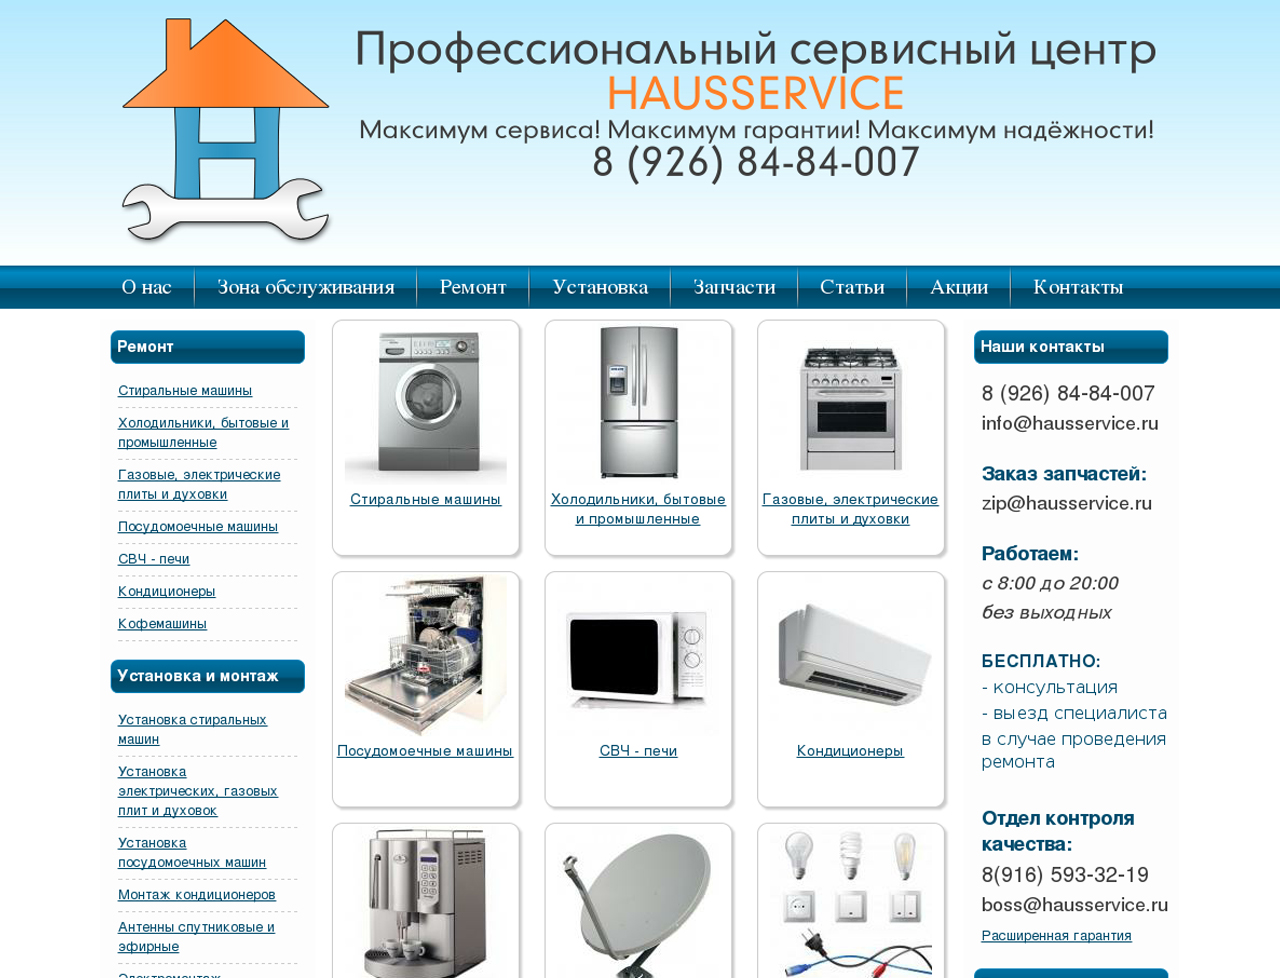 Hausservice.ru - создание сайта, простой дизайн, контекстная реклама в Яндекс Директ, хостинг, домен